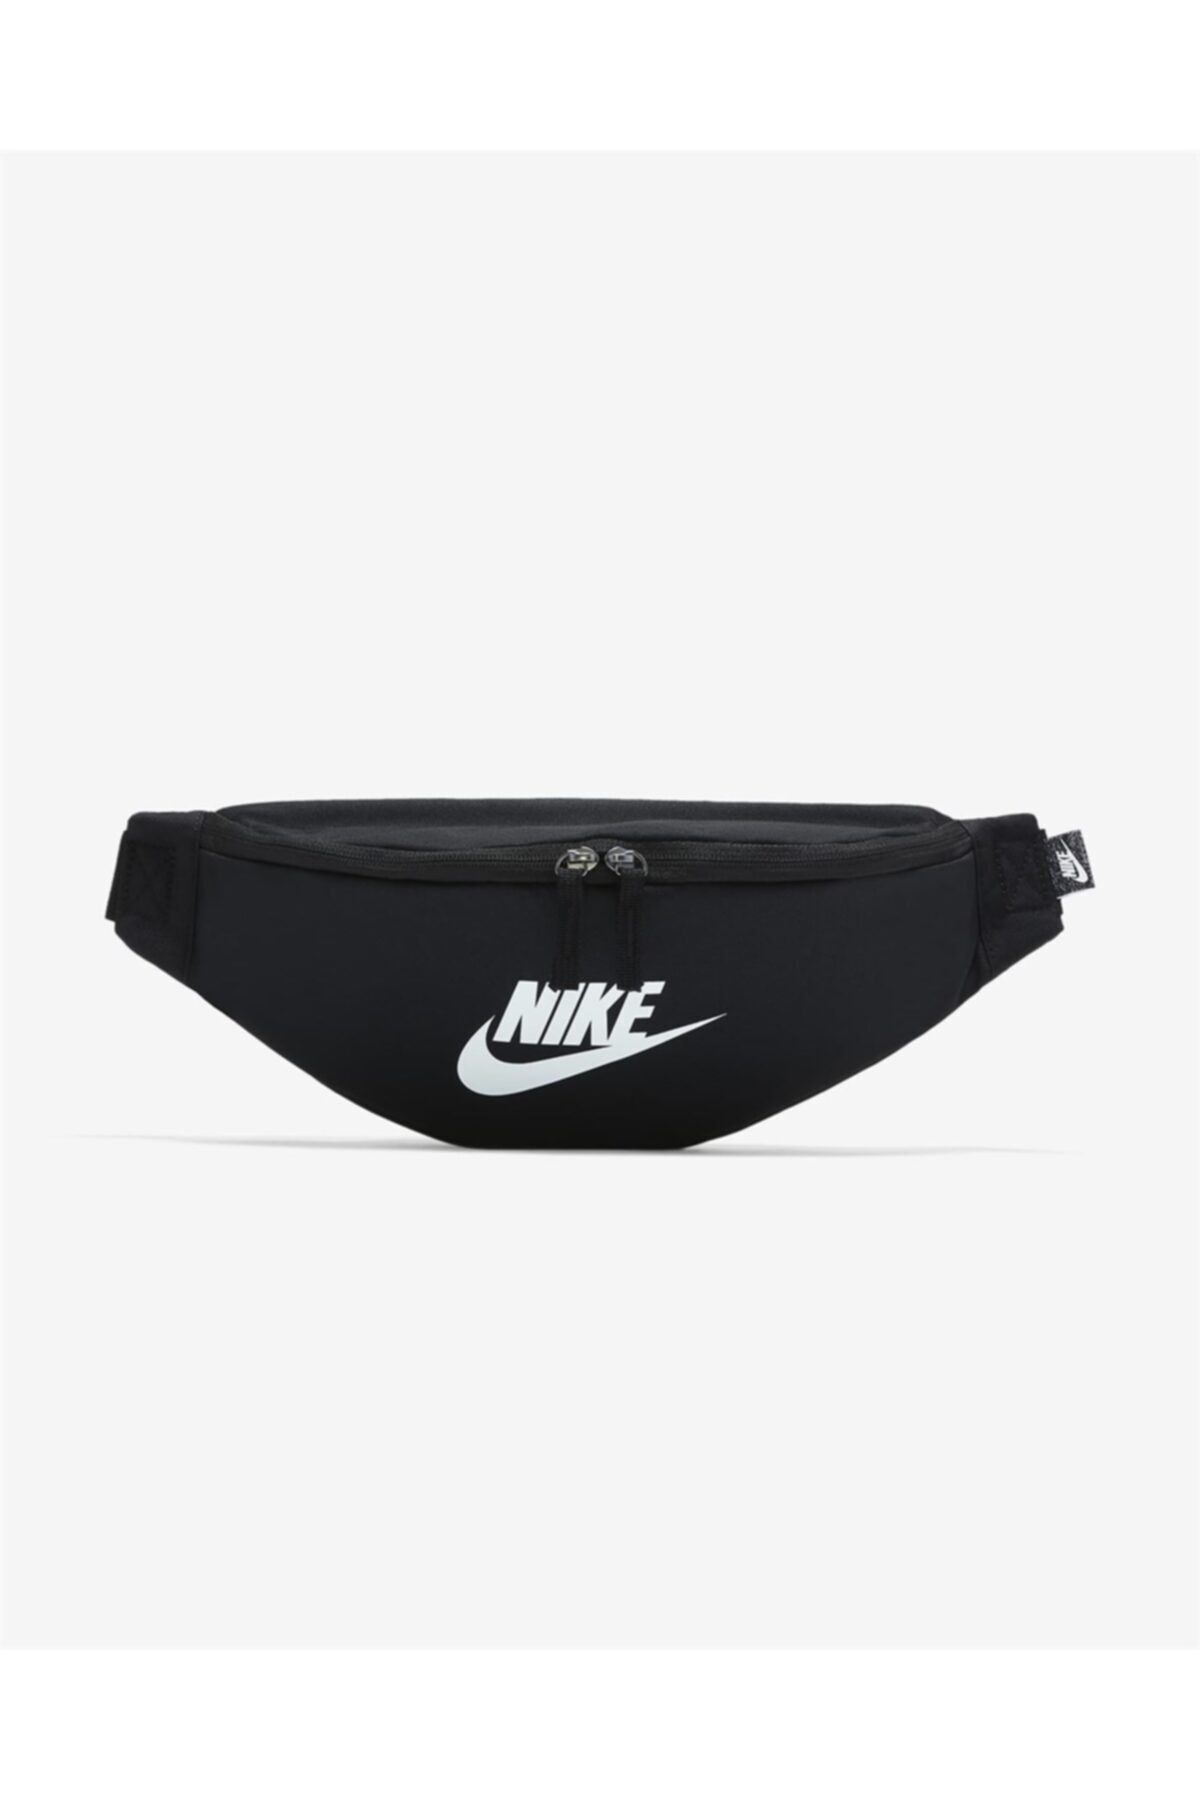 Nike Herıtage Waıstpack Fa21 Unisex Siyah Bel Çantası Db0490-010